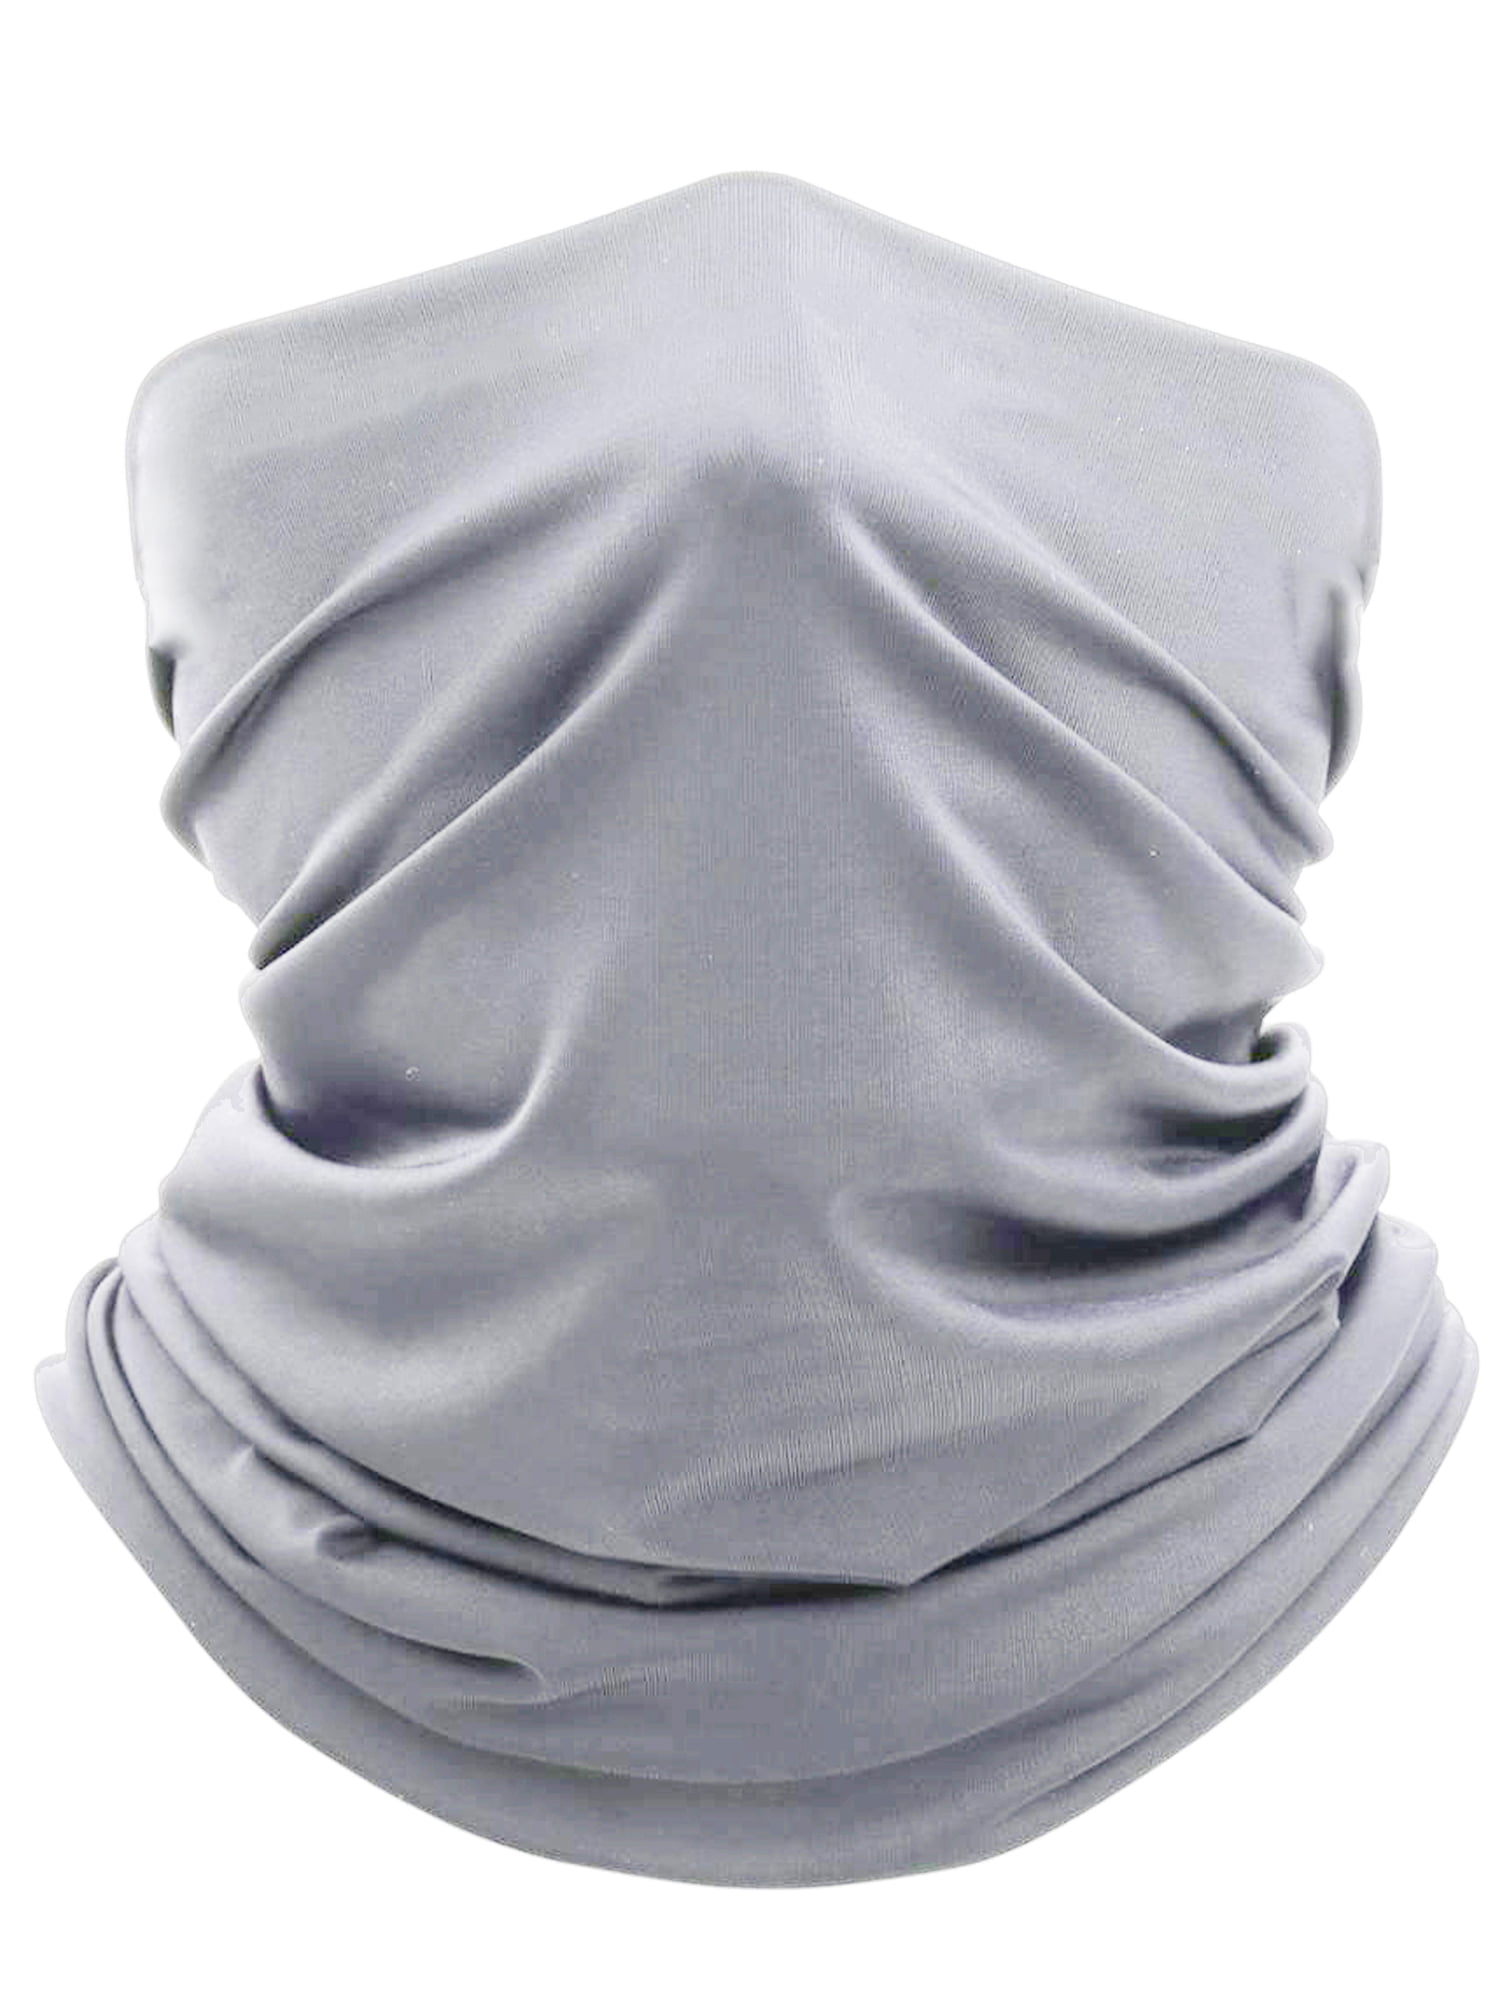 3 for aslow $8.10 Tube Bandana Scarf Neck Gaiter Head Face Mask Multi-use Neck 